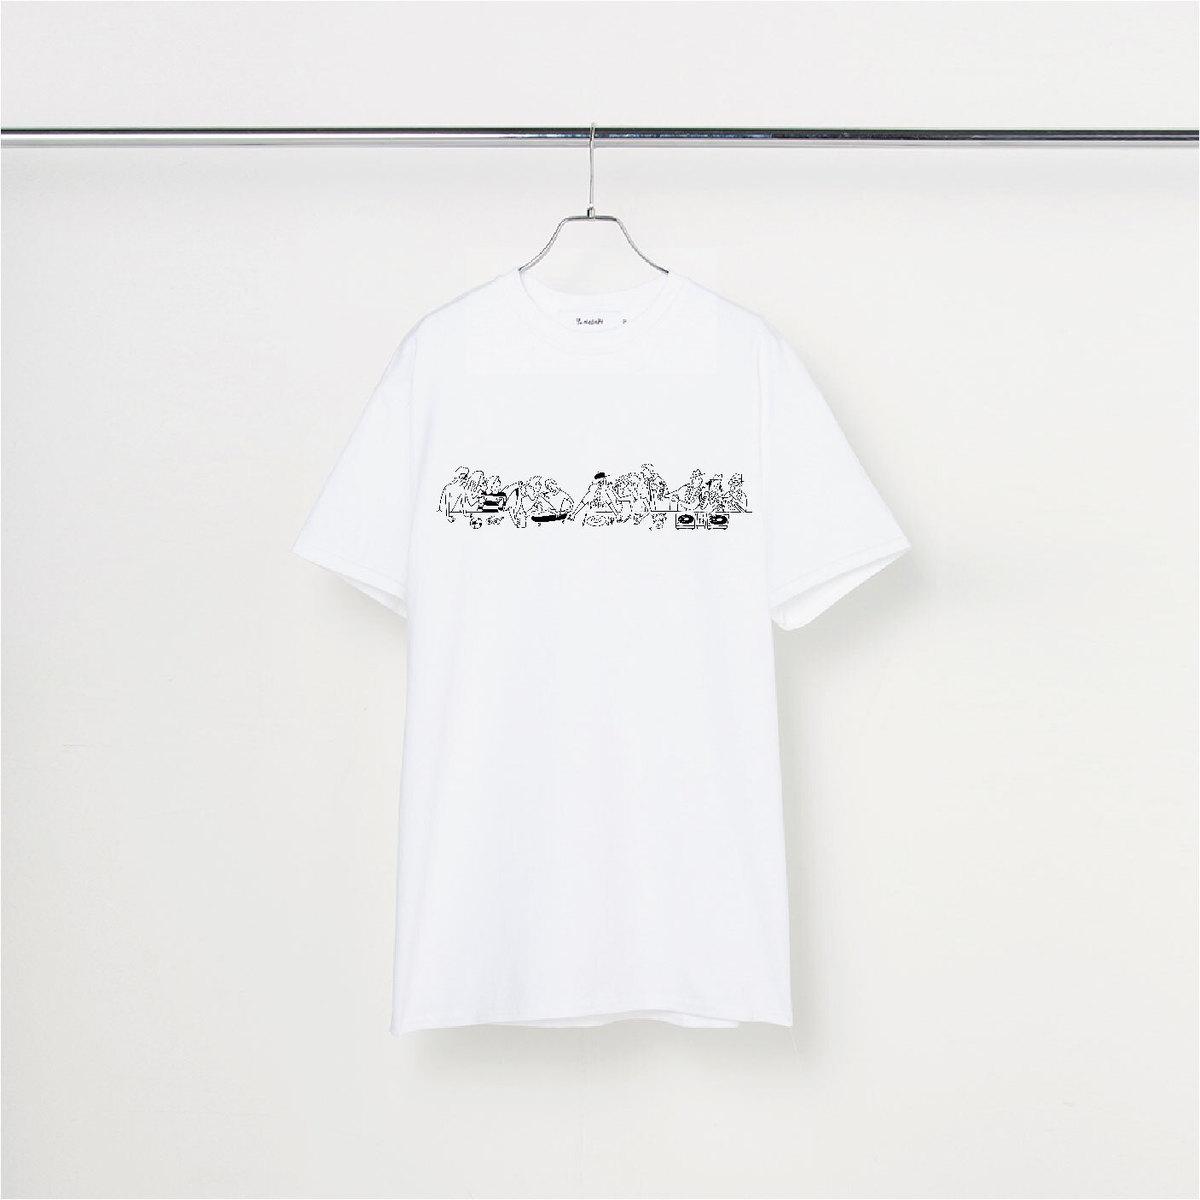 長場雄の個展が渋谷のギャラリー「サイ」で開催中。〈アンダーカバー〉とのコラボTシャツも販売 - Slide:1